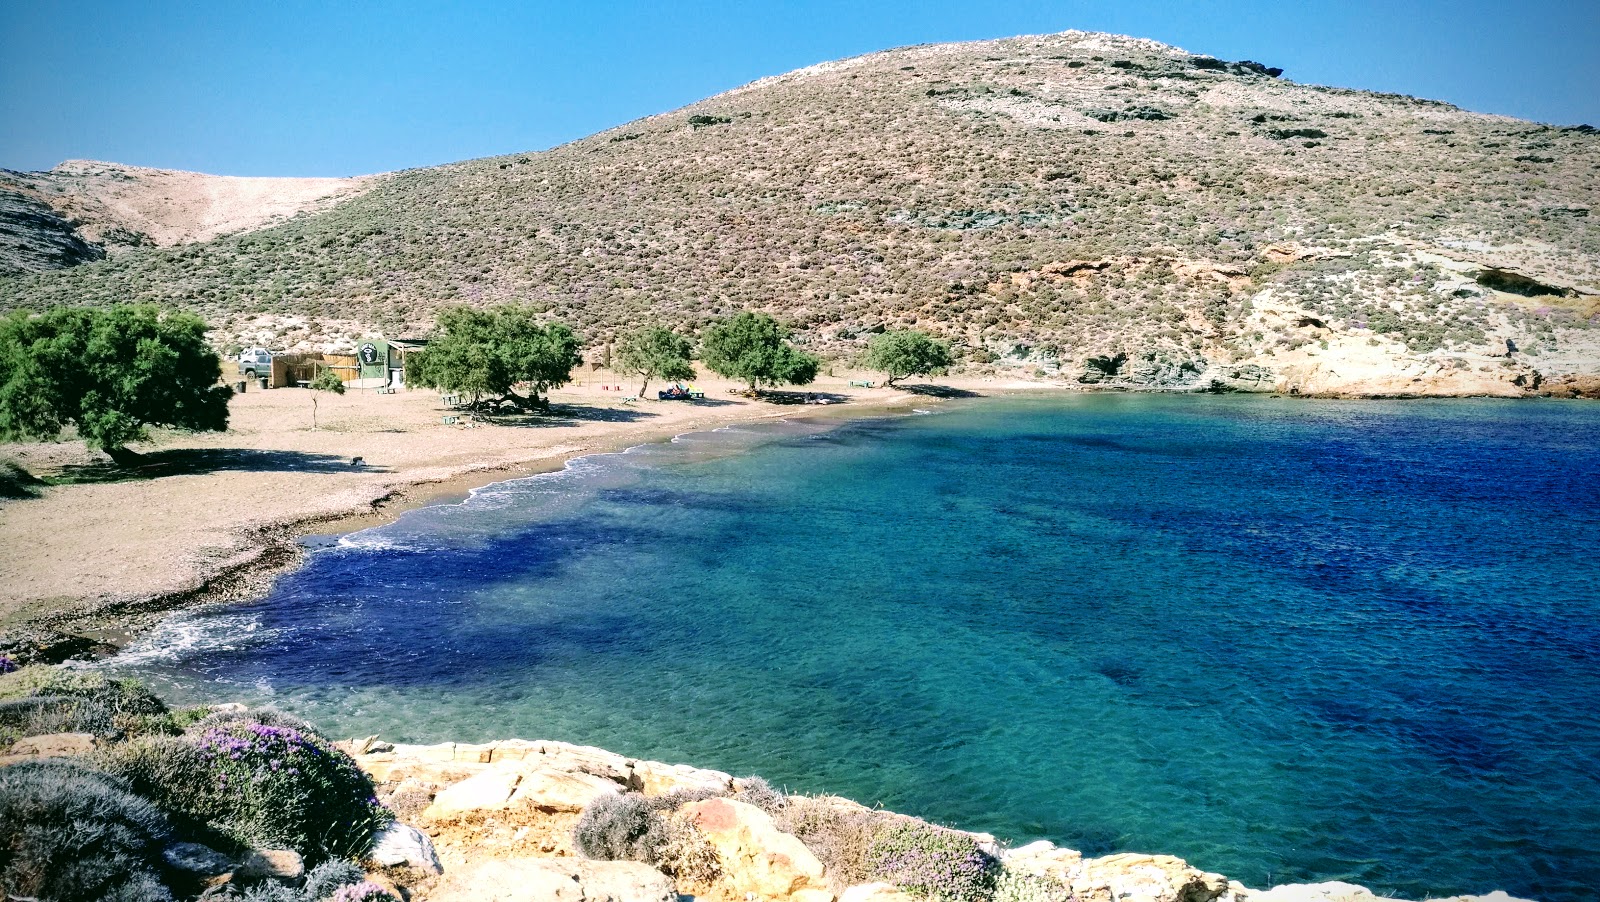 Agia Thalassa'in fotoğrafı parlak kum yüzey ile